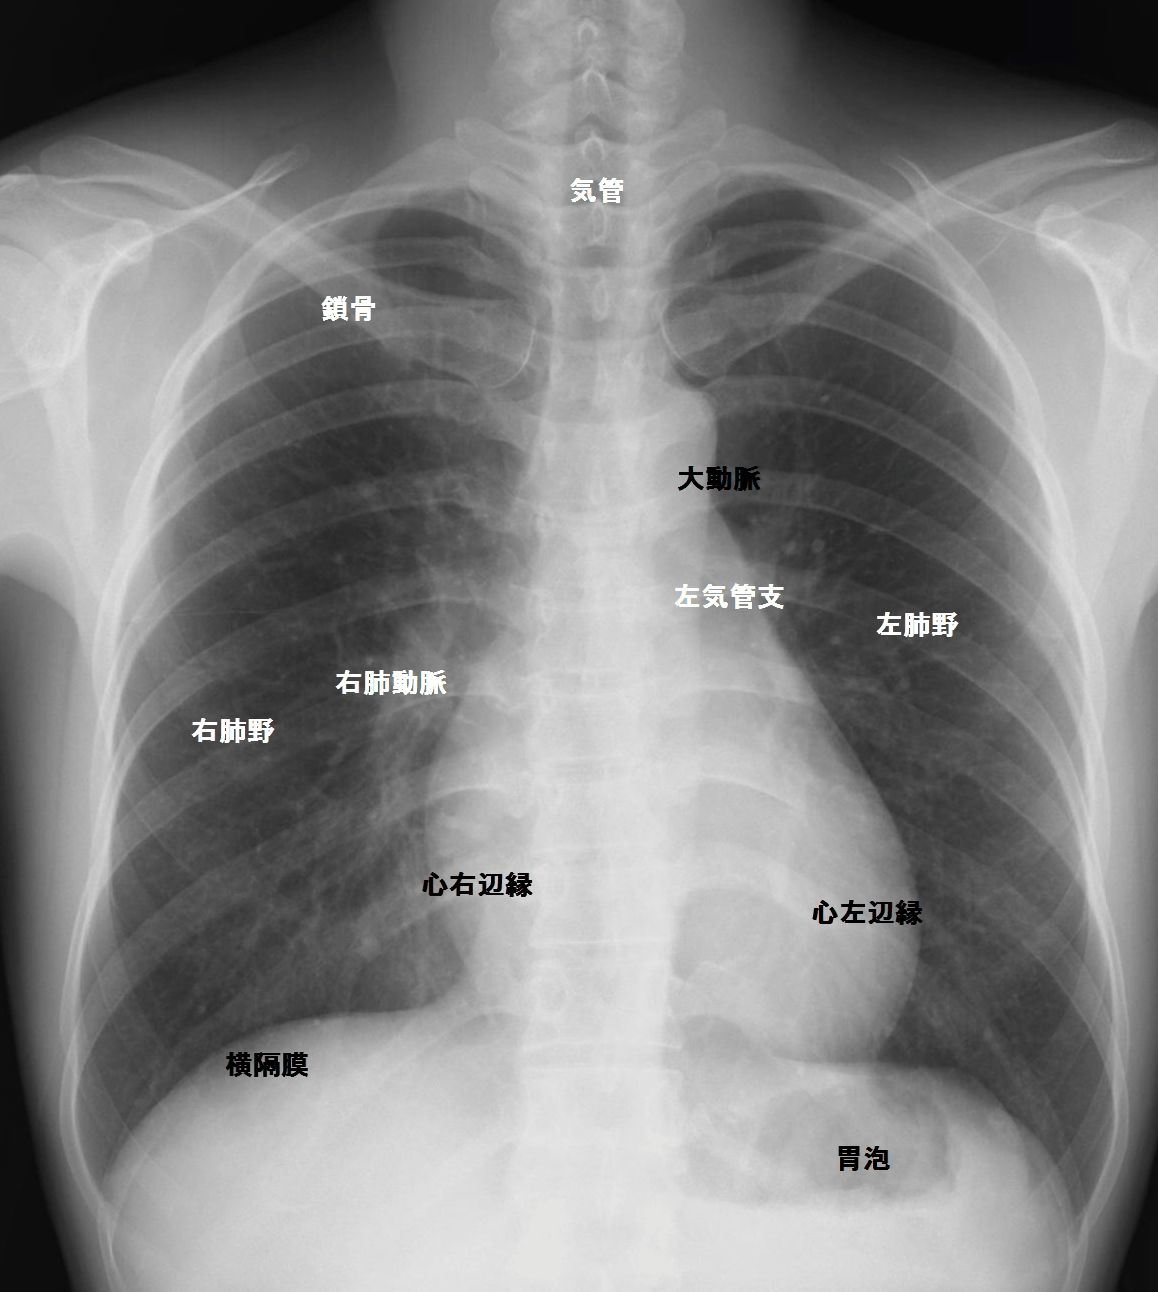 胸部の構造 胸部写真の読み方 太田東こども おとな診療所 こどもとおとなの病気について 気軽に相談できる診療所です